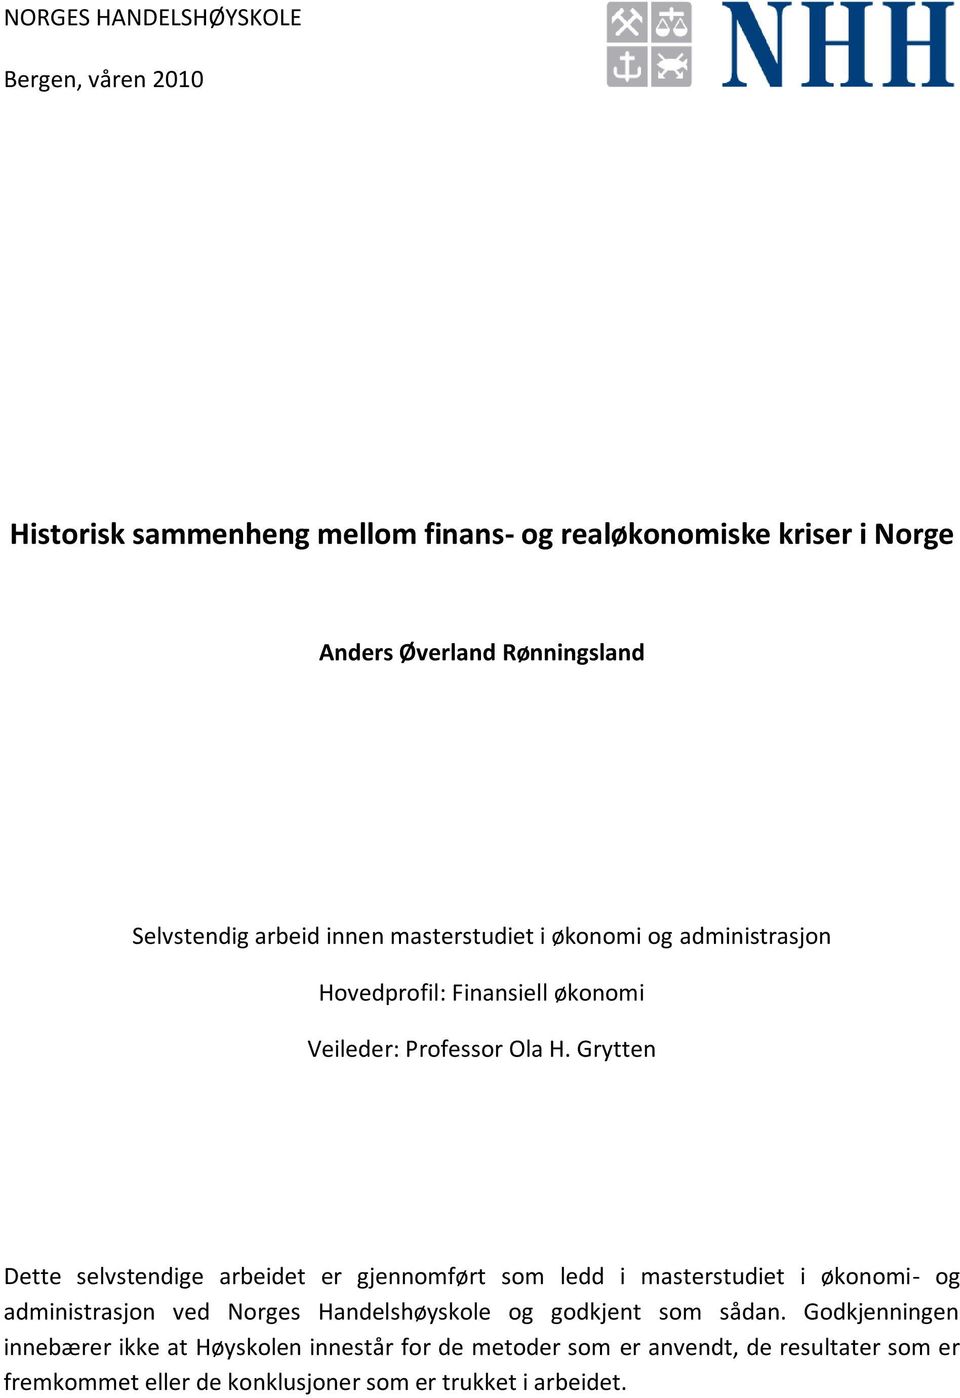 Historisk sammenheng mellom finans- og realøkonomiske kriser i Norge - PDF  Free Download